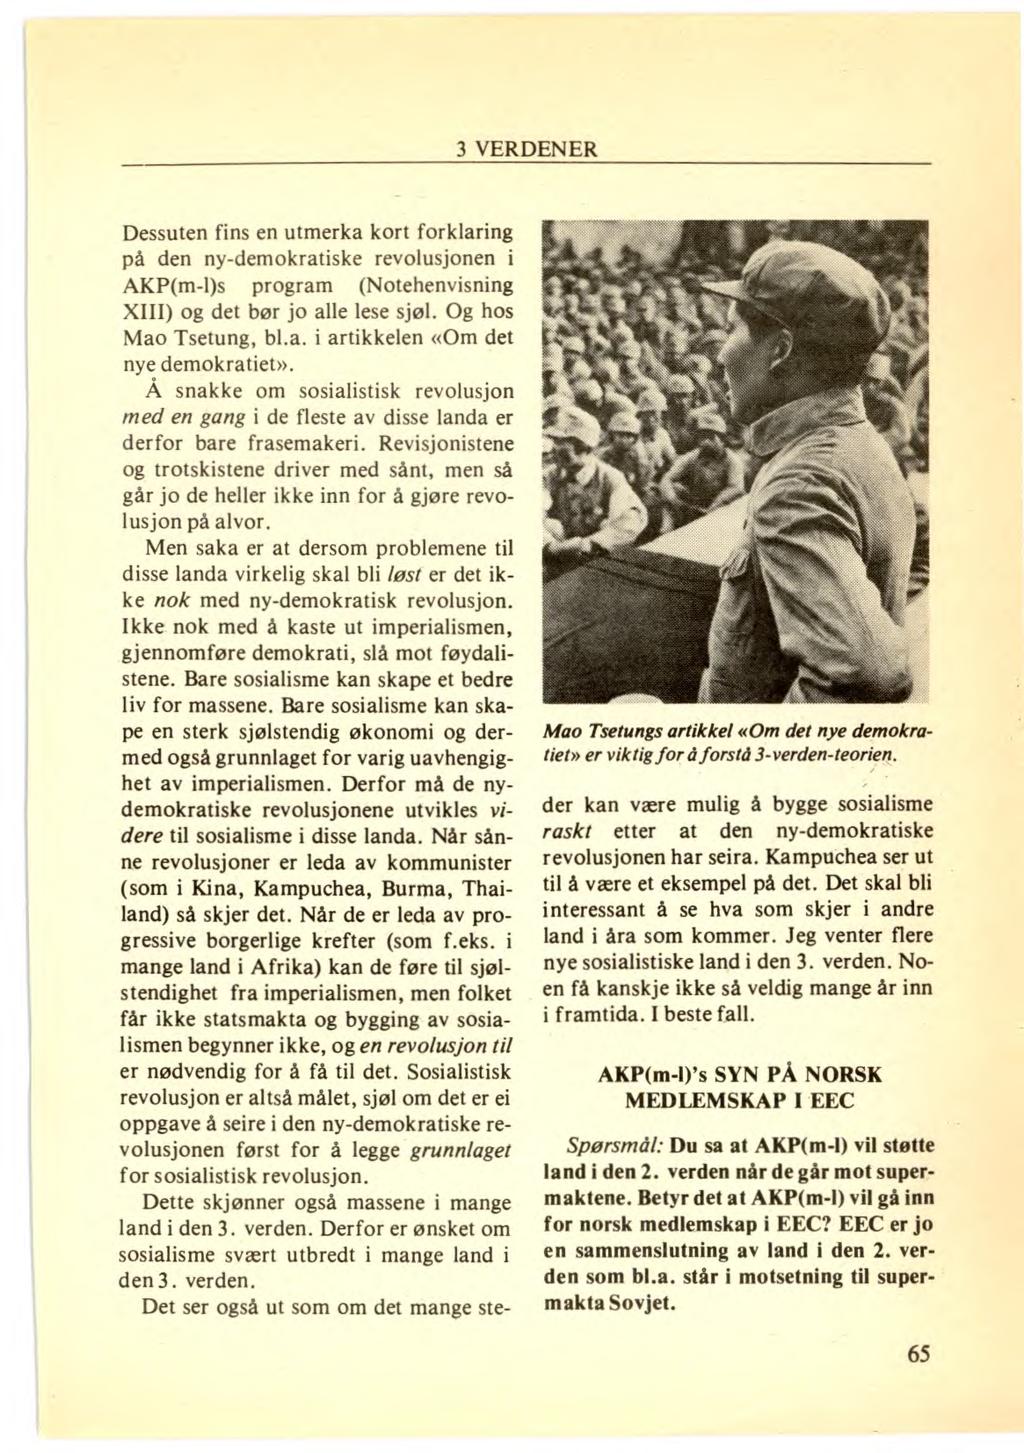 Dessuten fins en utmerka kort forklaring på den ny-demokratiske revolusjonen i AKP(m-ps program (Notehenvisning XIII) og det bør jo alle lese sjøl. Og hos Mao Tsetung, bl.a. i artikkelen «Om det nye demokratiet».